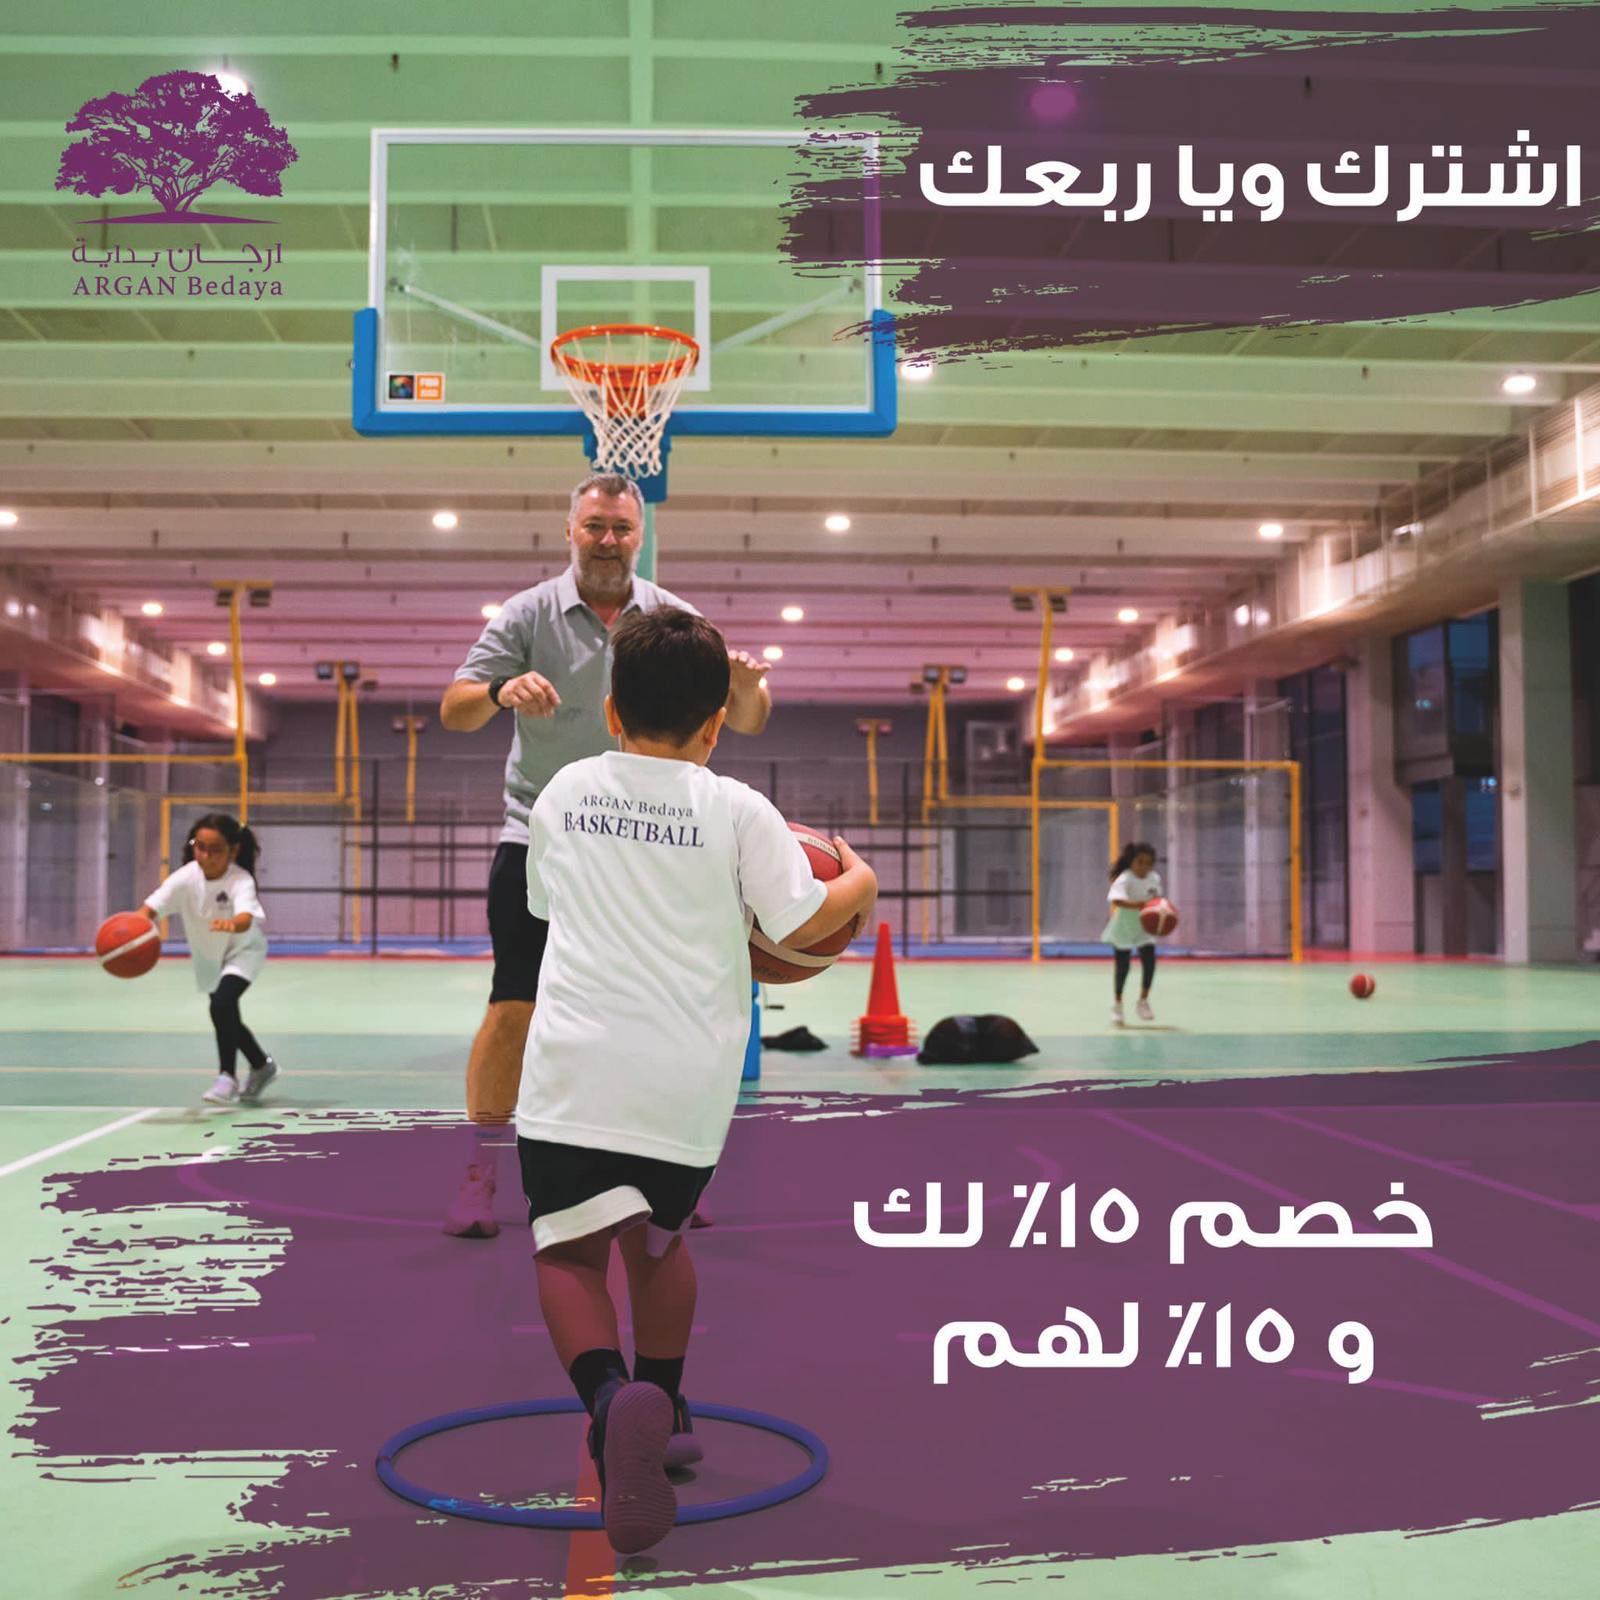 Nakon Njemačke i SAD-a, Bjelovarčanin Velibor košarkaška znanja dijeli u dalekom Kuvajtu